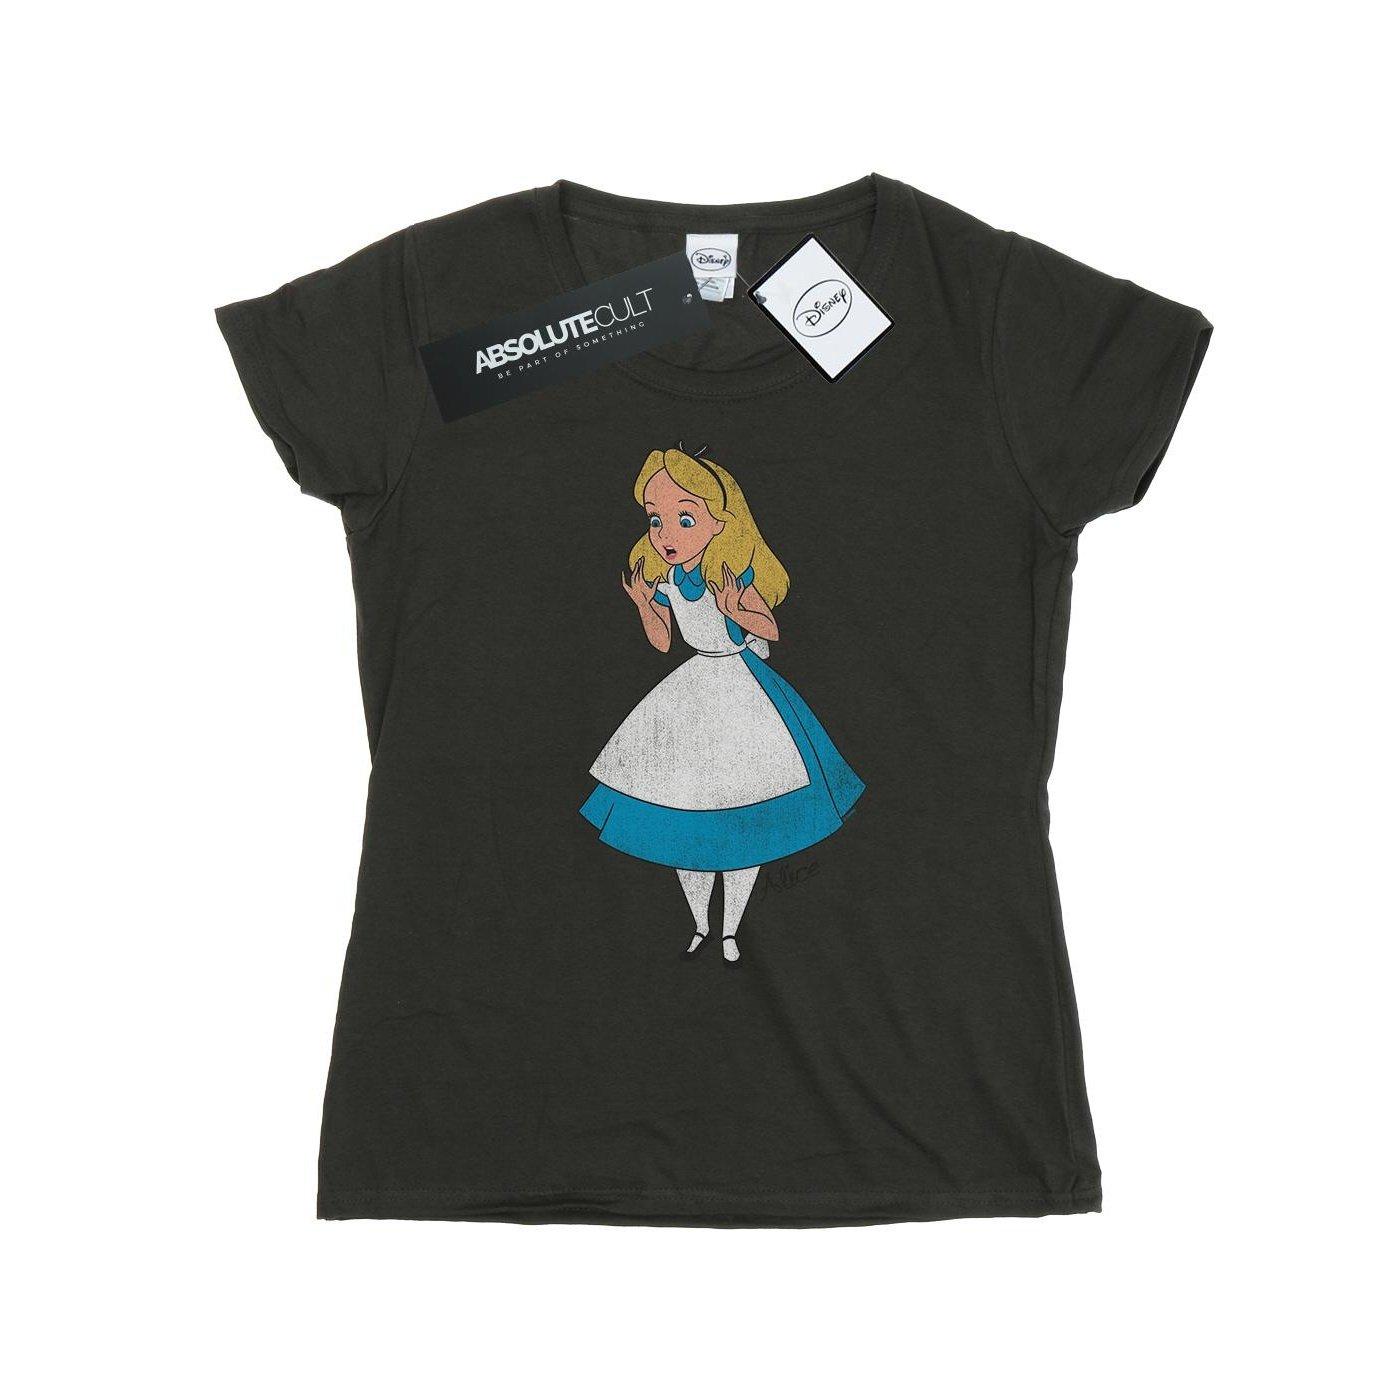 Tshirt Damen Taubengrau M von Alice in Wonderland